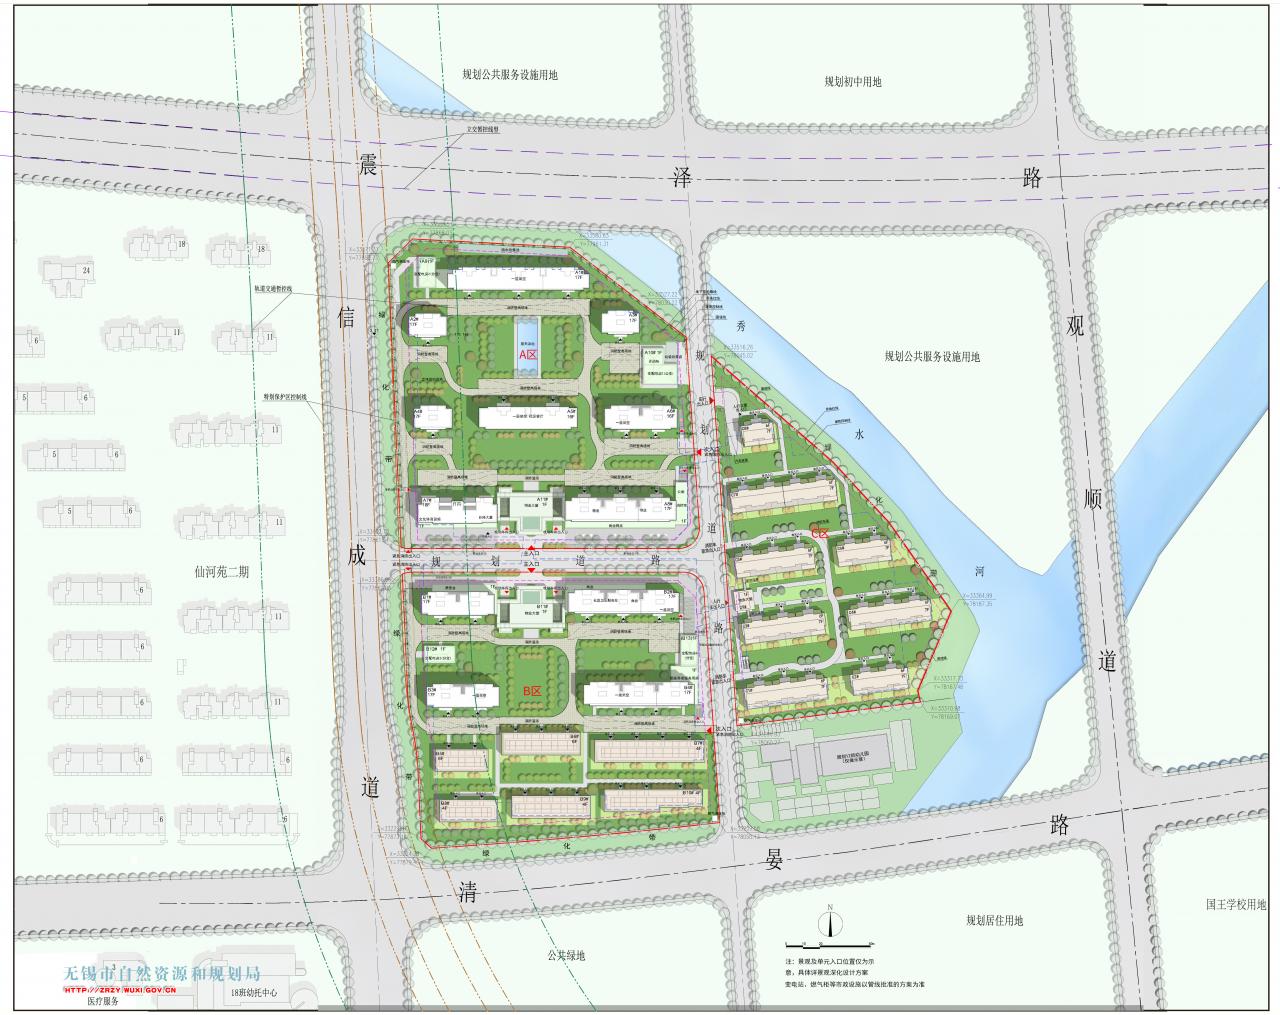 XDG-2019-62号地块开发建设项目规划（建筑）设计方案批前公示